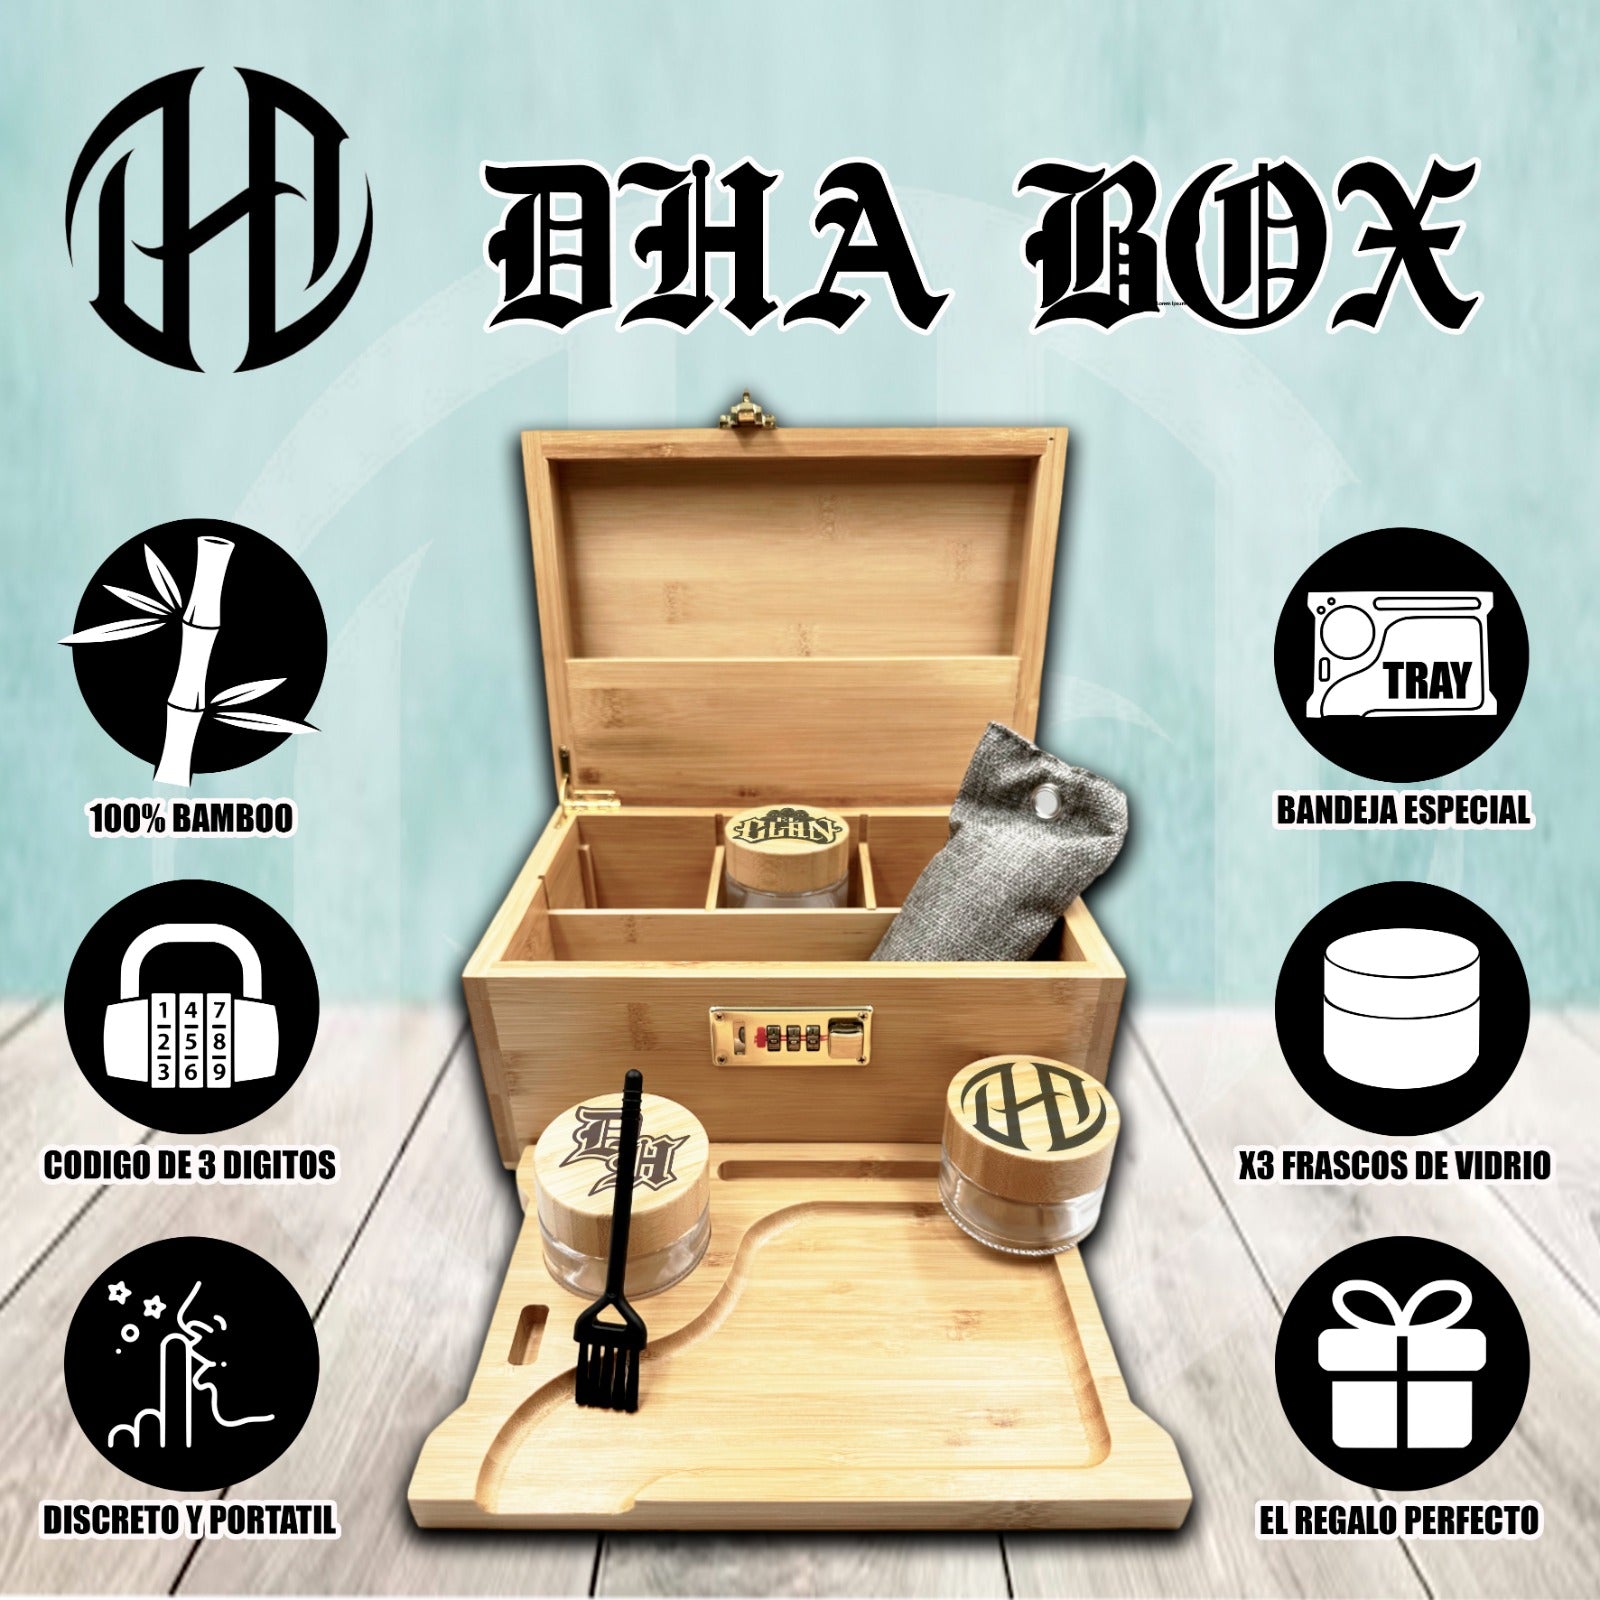 DHA BOX